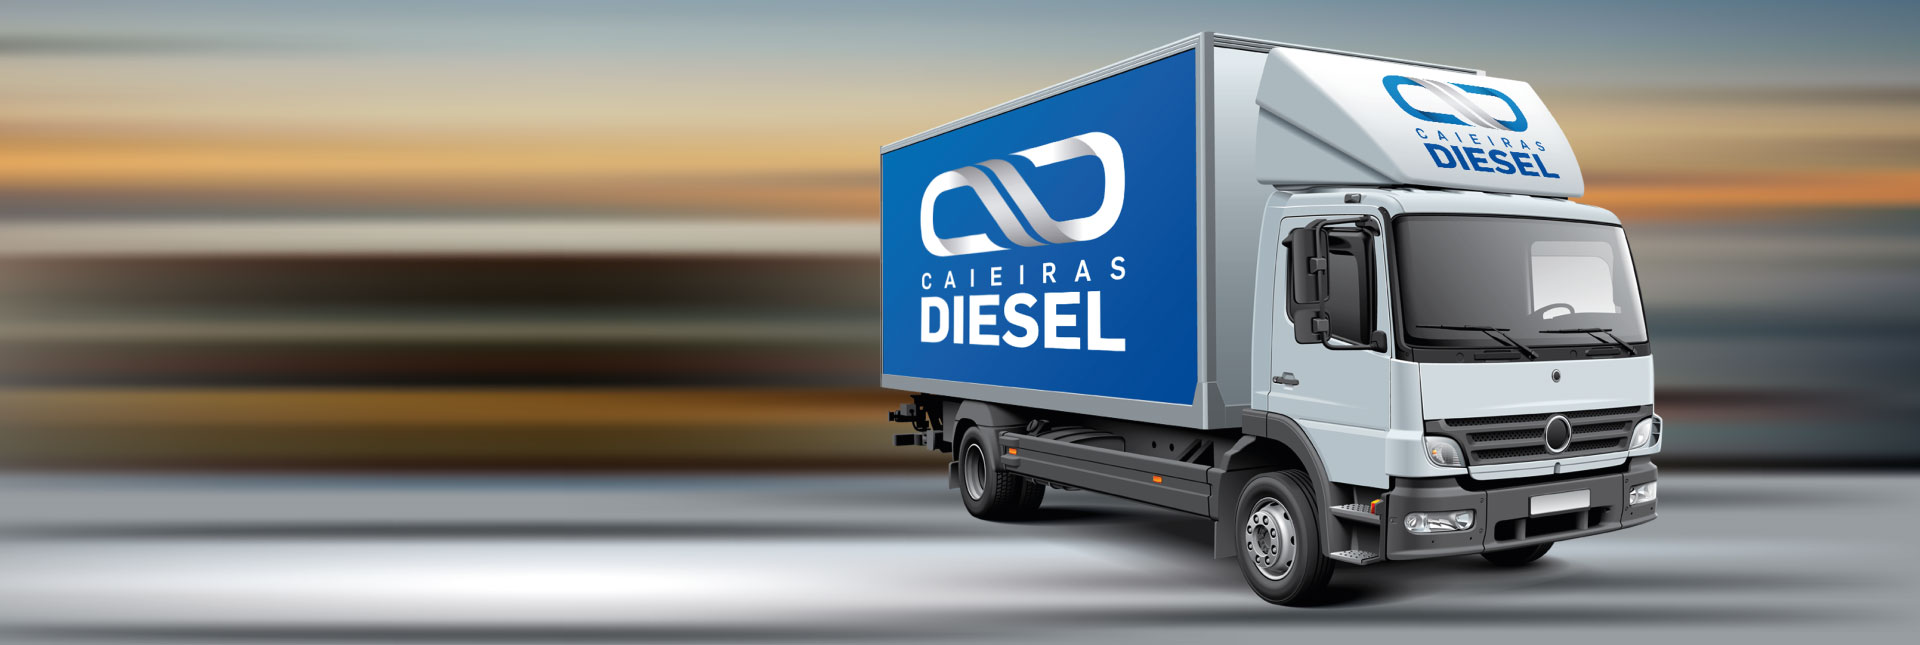 Peças para Caminhão - Caieiras Diesel